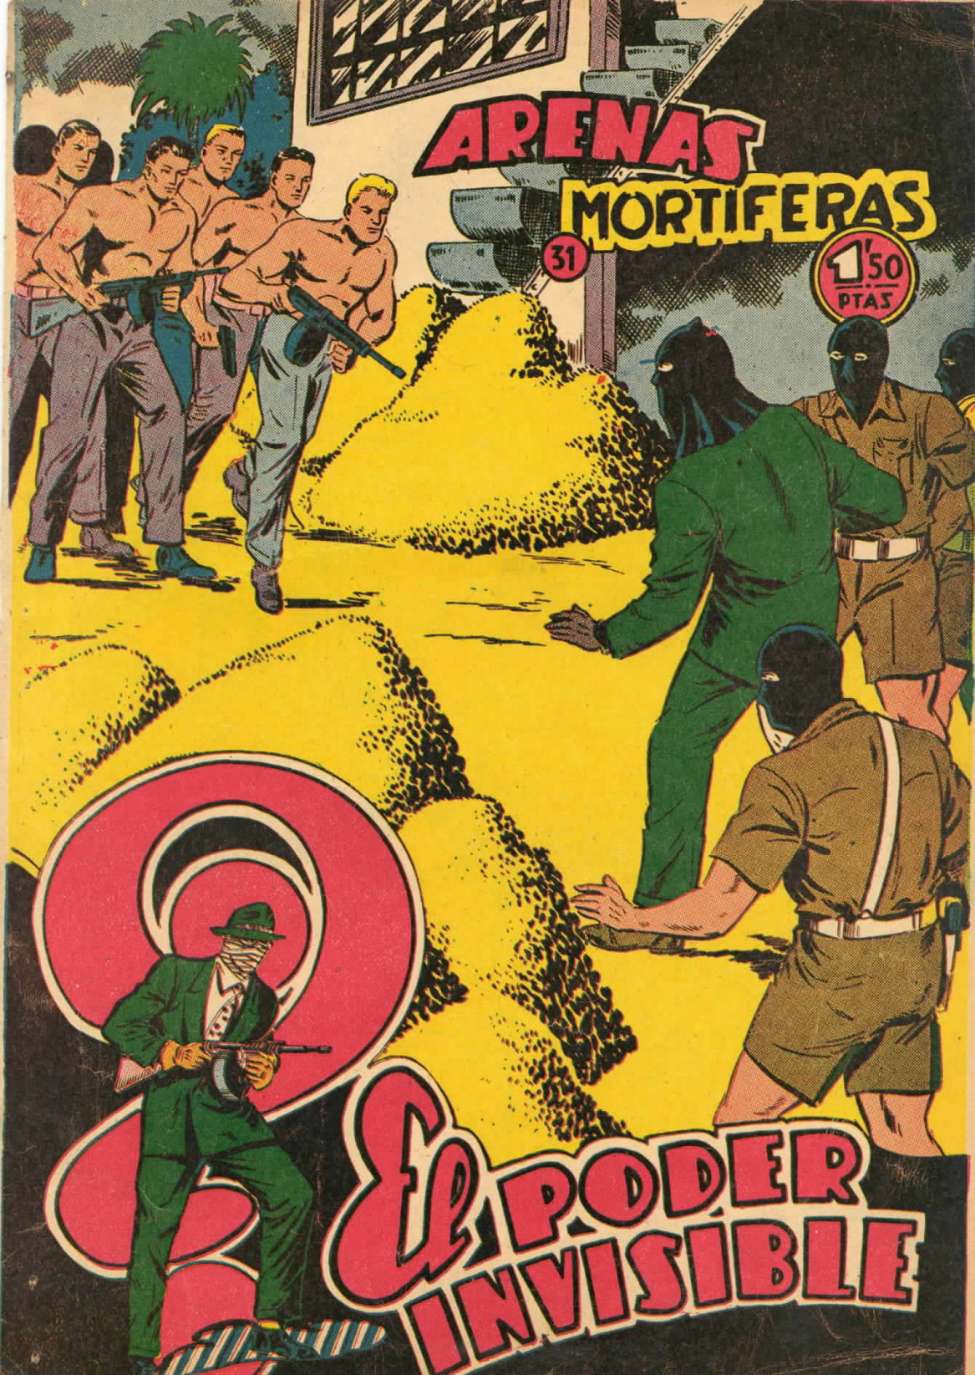 Comic Book Cover For El Poder Invisible 31 - Arenas mortíferas